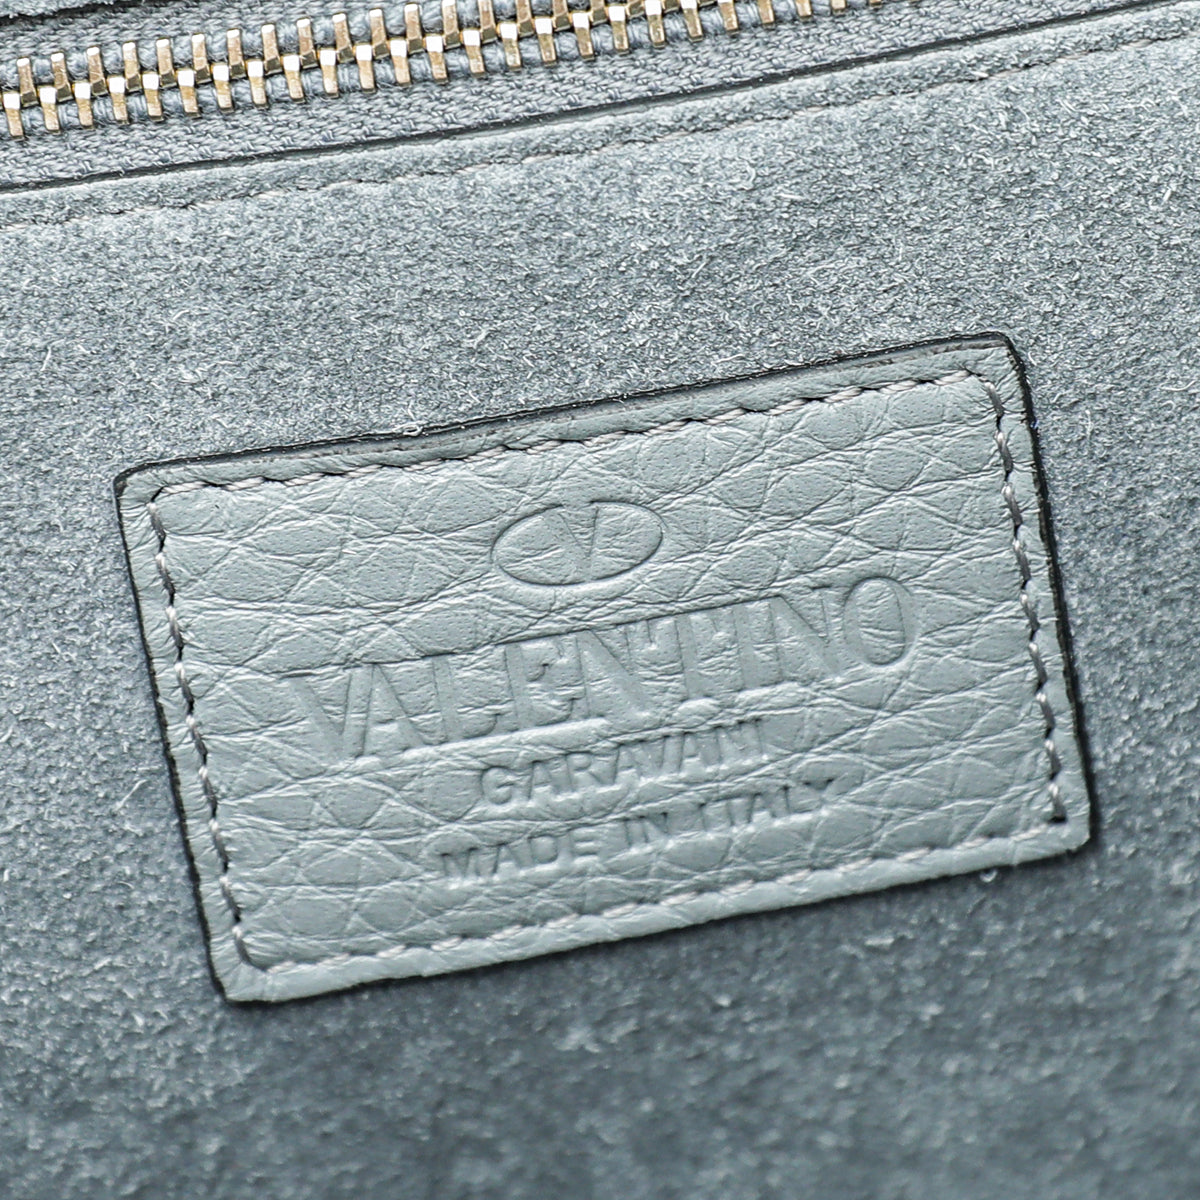 Valentino Light Gray Rockstud Glam Lock Medium Bag